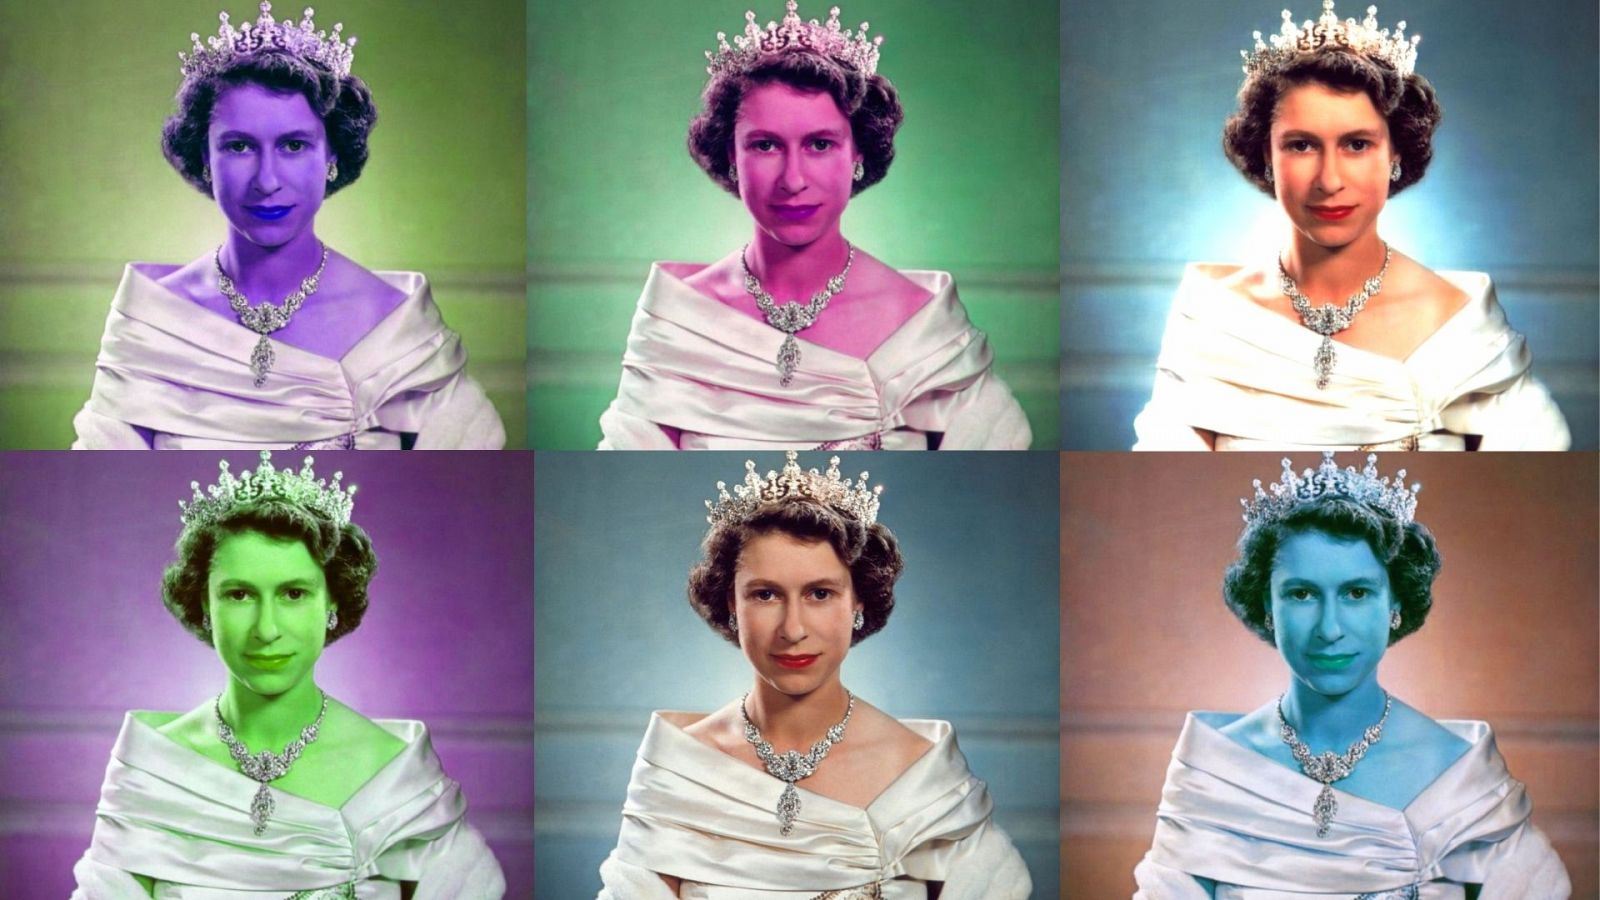 La 2 repasa los 95 años de Isabel II con una programación especial